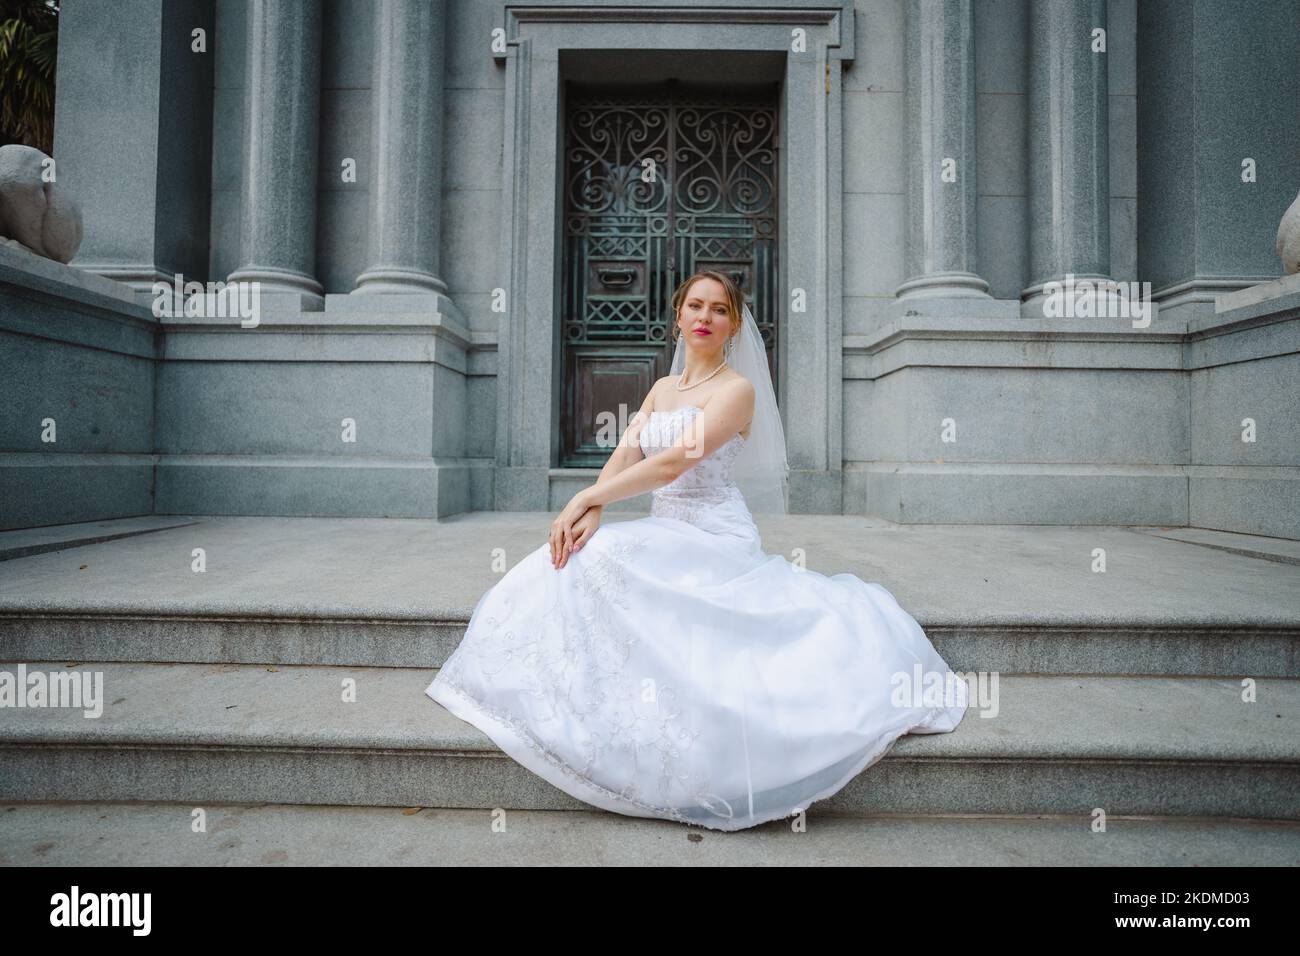 Mariée avec attitude debout devant un bâtiment de granit Banque D'Images